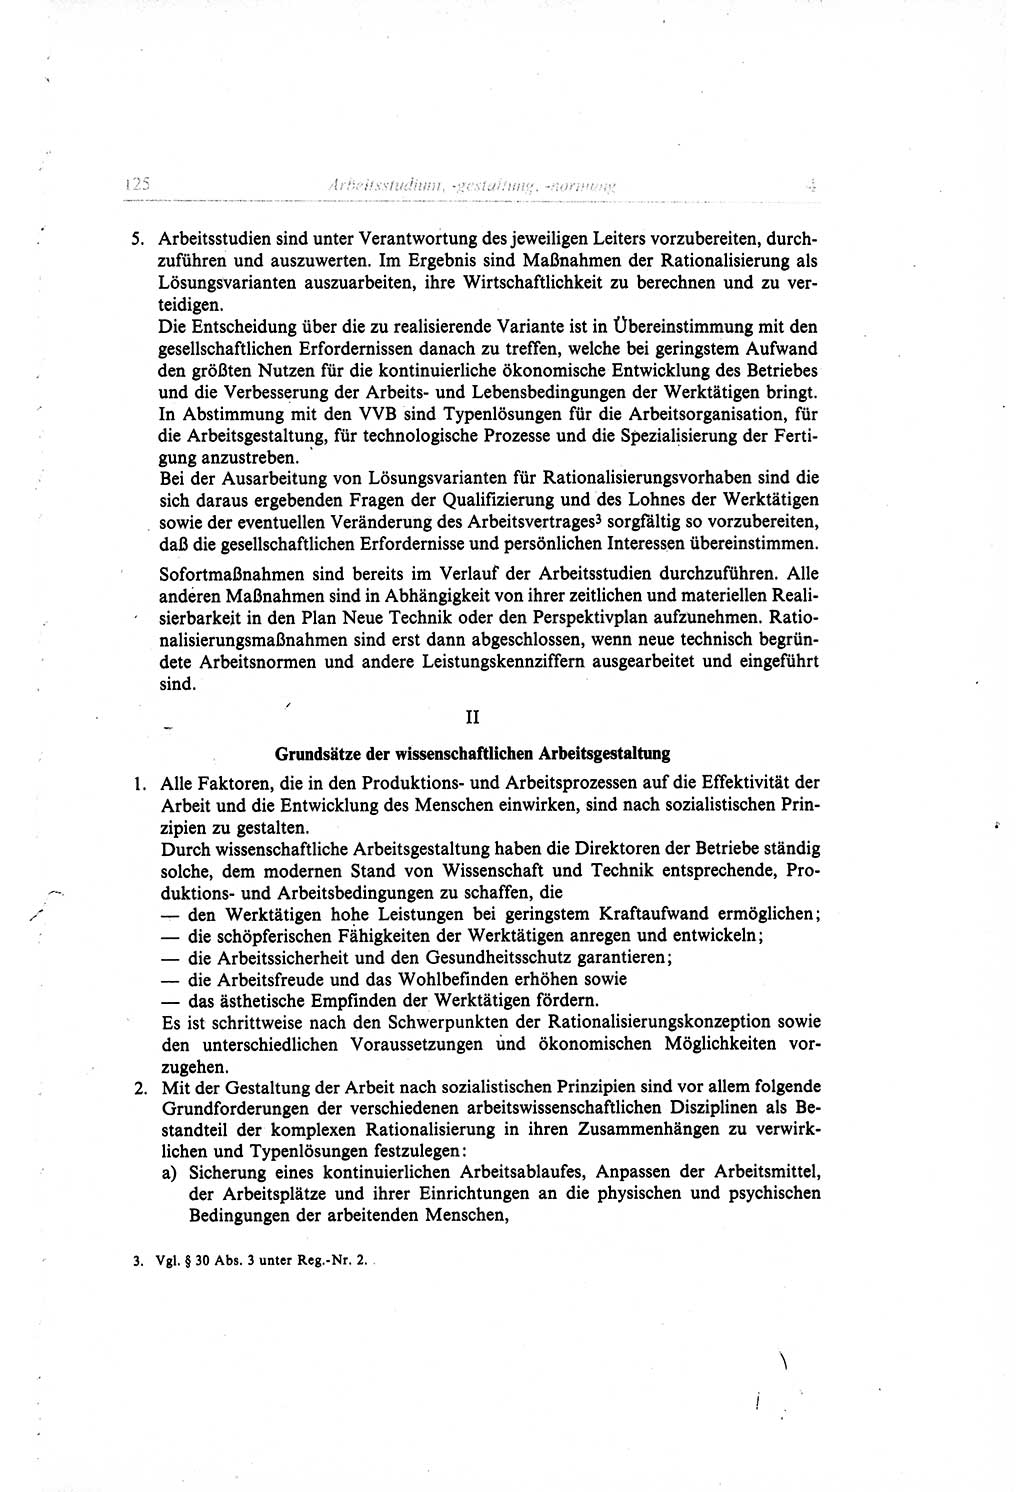 Gesetzbuch der Arbeit (GBA) und andere ausgewählte rechtliche Bestimmungen [Deutsche Demokratische Republik (DDR)] 1968, Seite 125 (GBA DDR 1968, S. 125)